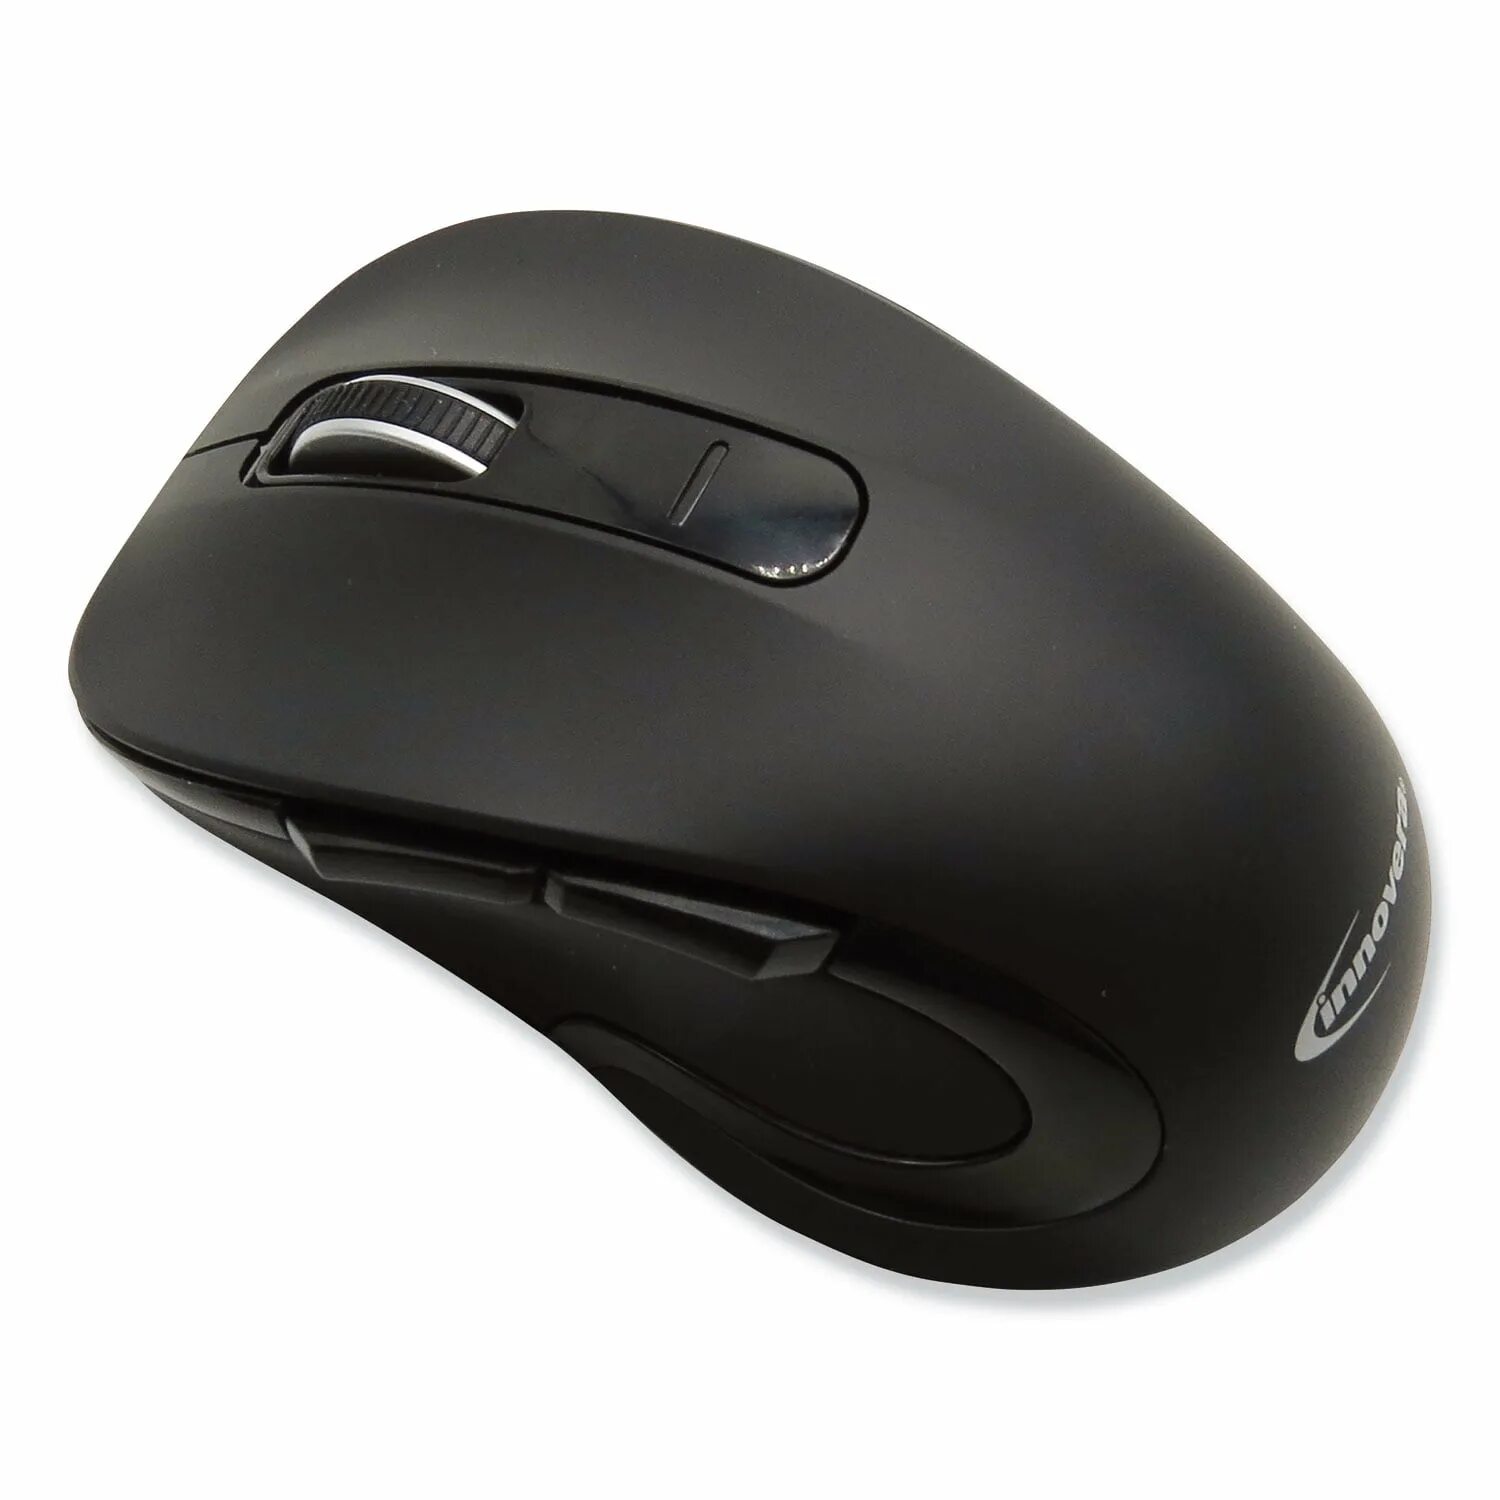 Купить bluetooth мышь. Мышка Wireless Optical Mouse. 2.4GHZ Wireless Optical Mouse. Мышка Intro 2.4GHZ Wireless. Optical Mouse 3600 вз.